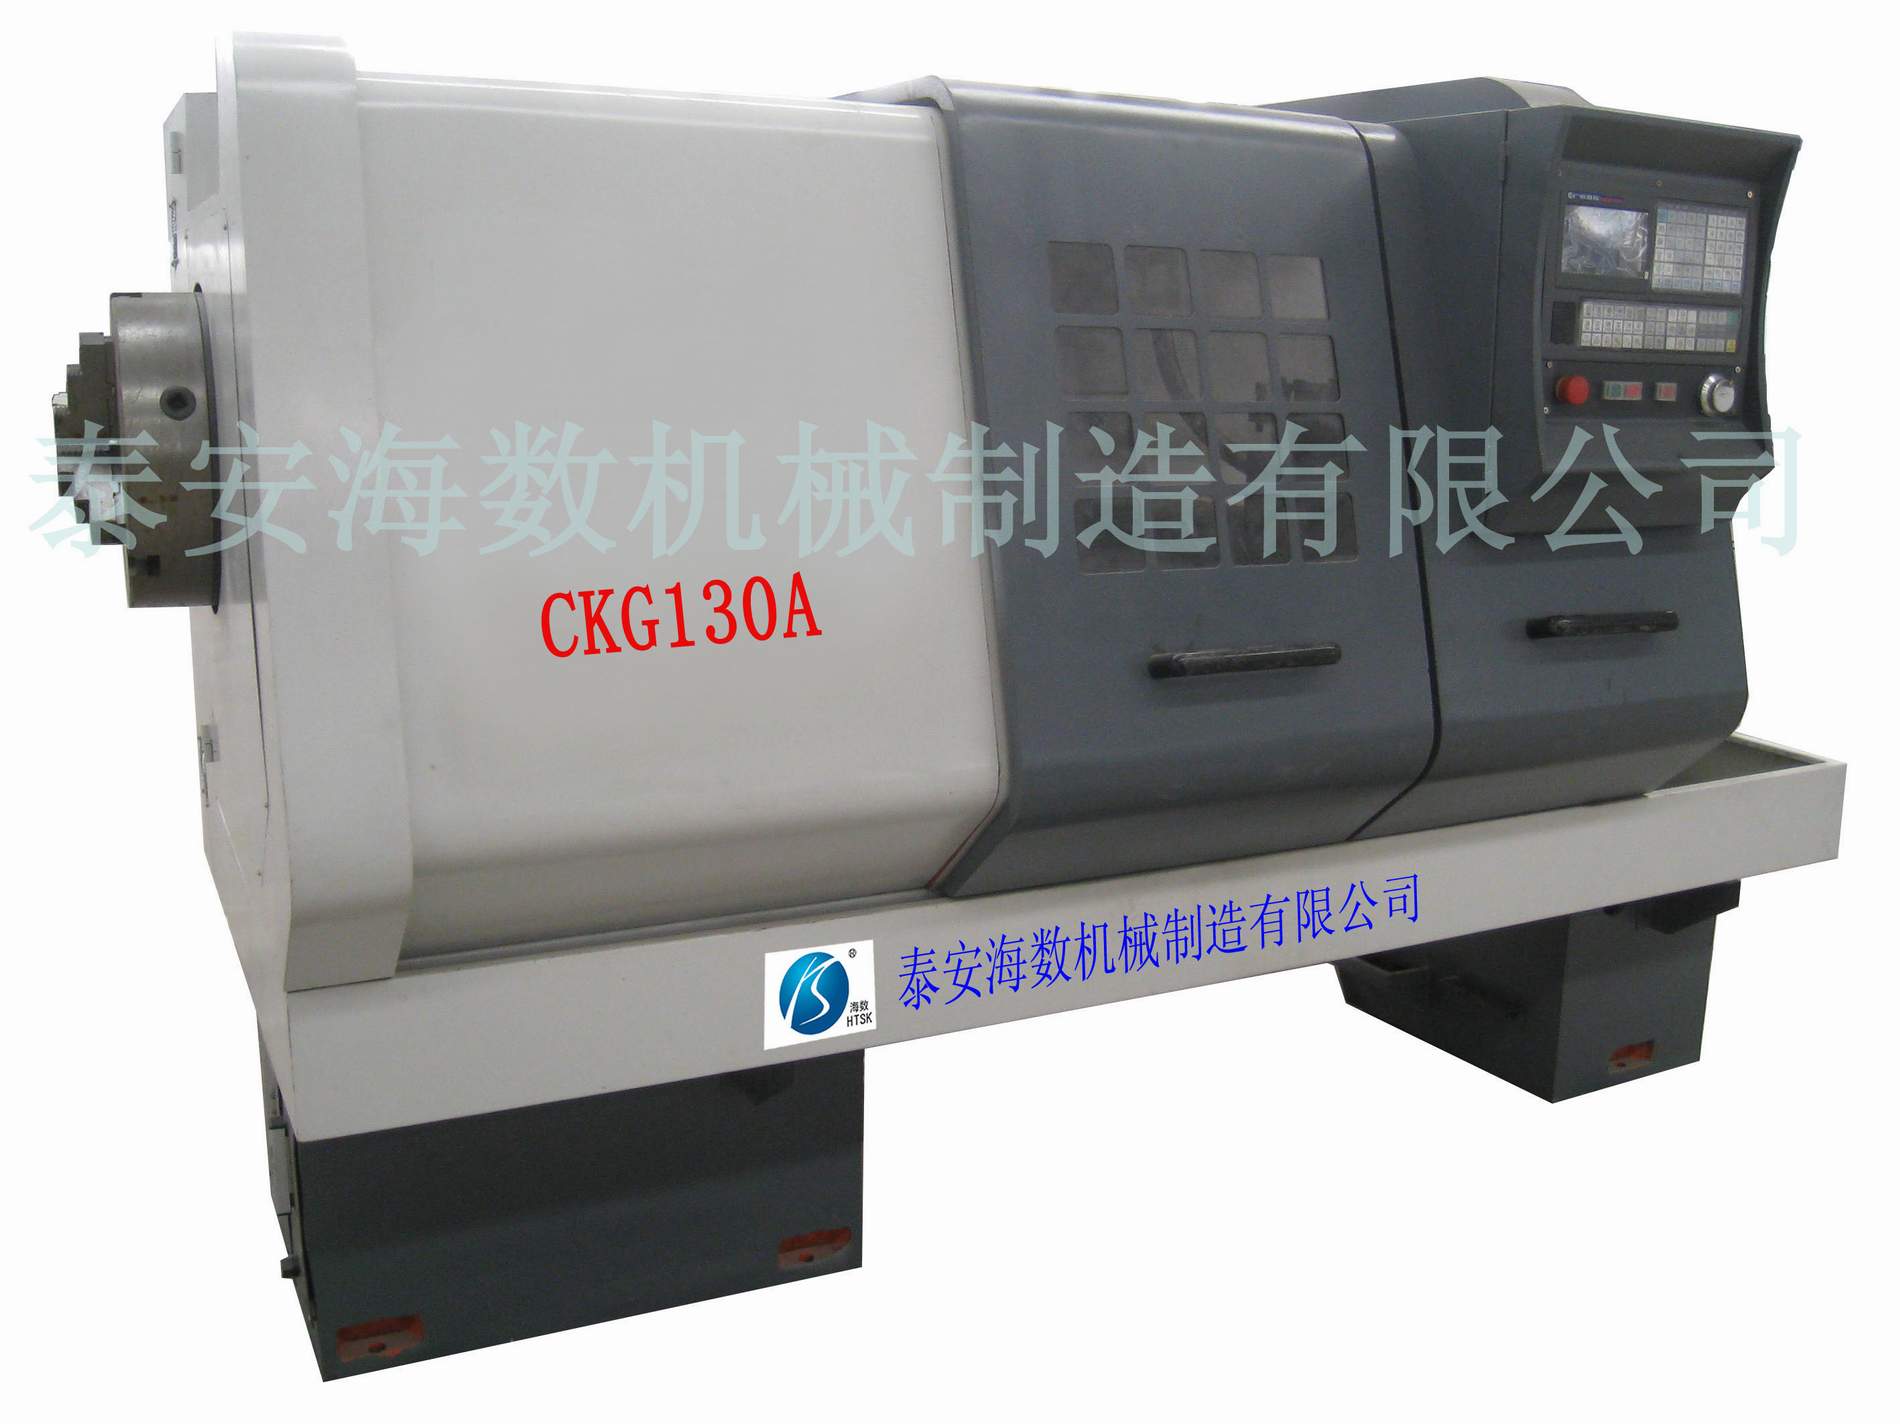 CKG130A/CKG160A 數控管螺紋車床